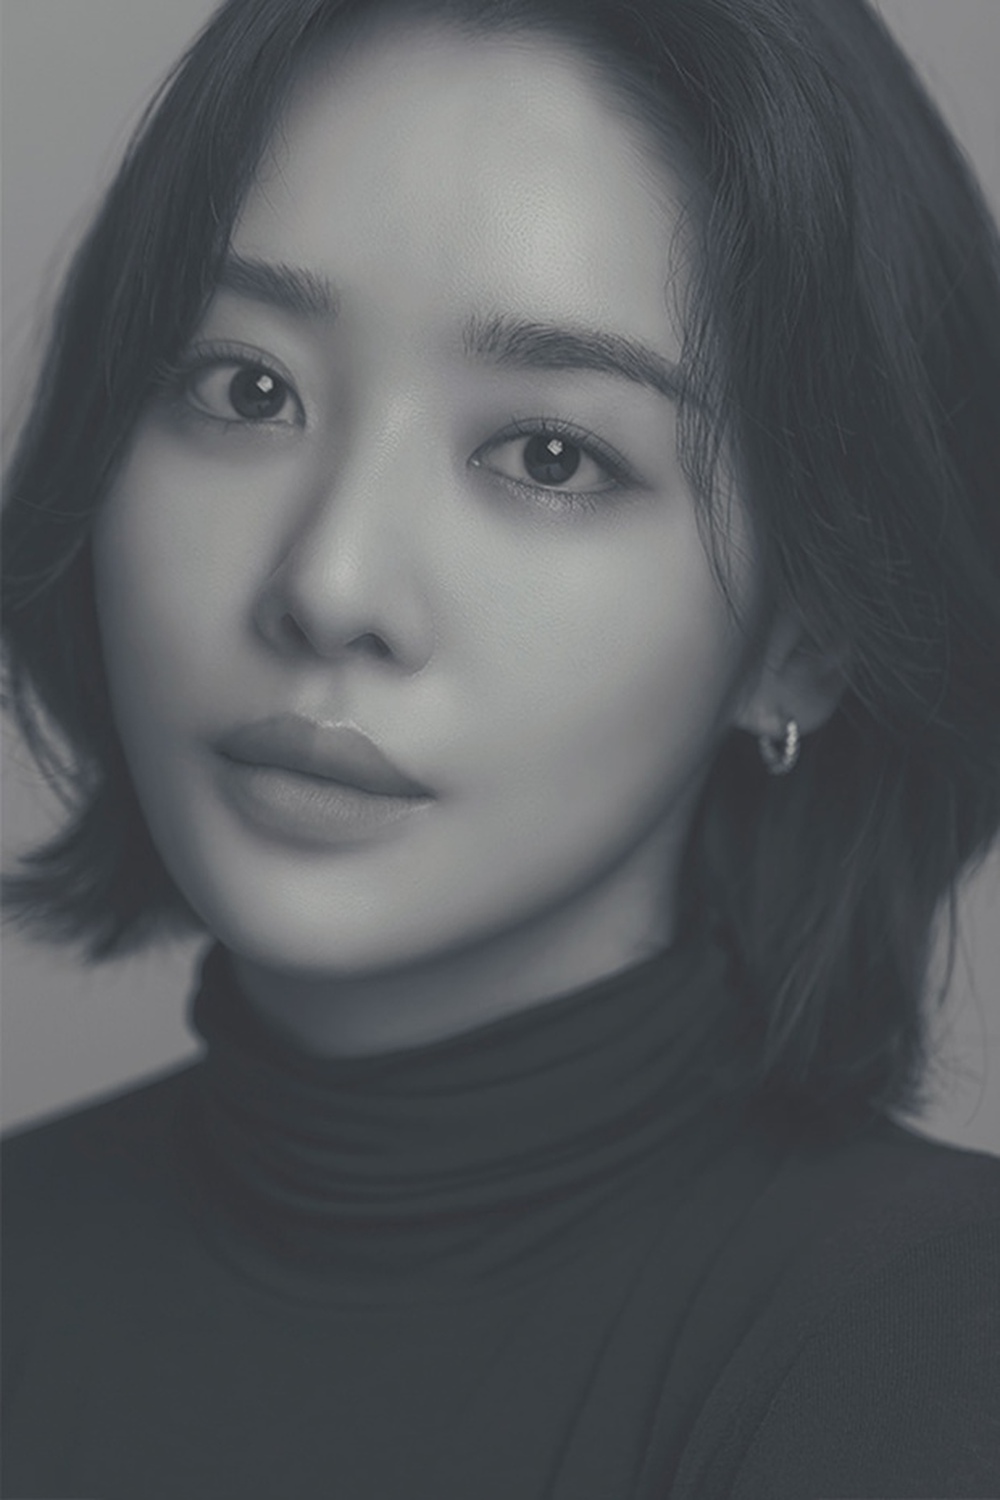  Ác nữ ngực khủng bắt nạt Song Hye Kyo: Đóa hoa nở muộn nóng bỏng, còn tốt nghiệp trường đại học danh tiếng thế giới - Ảnh 7.